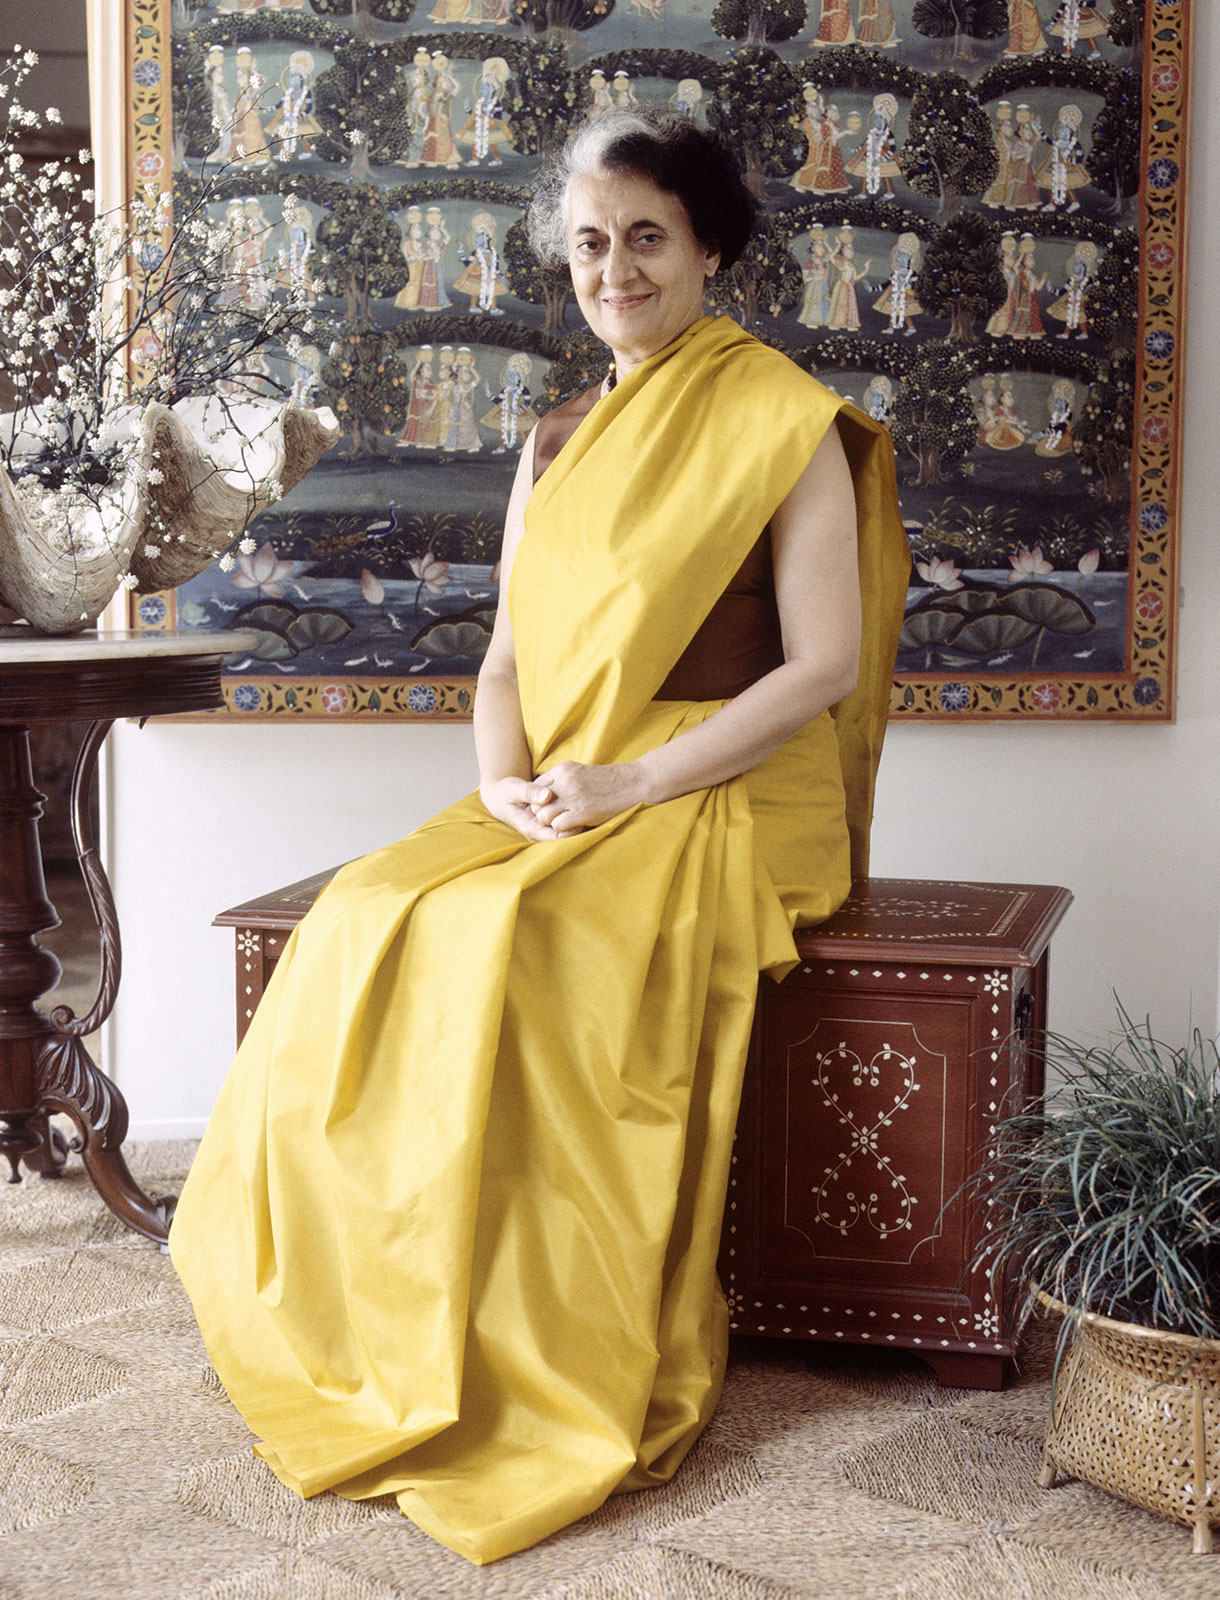 देश की पहली महिला प्रधानमंत्री इंदिरा गांधी को दुनिया कहती थी आयरन लेडी